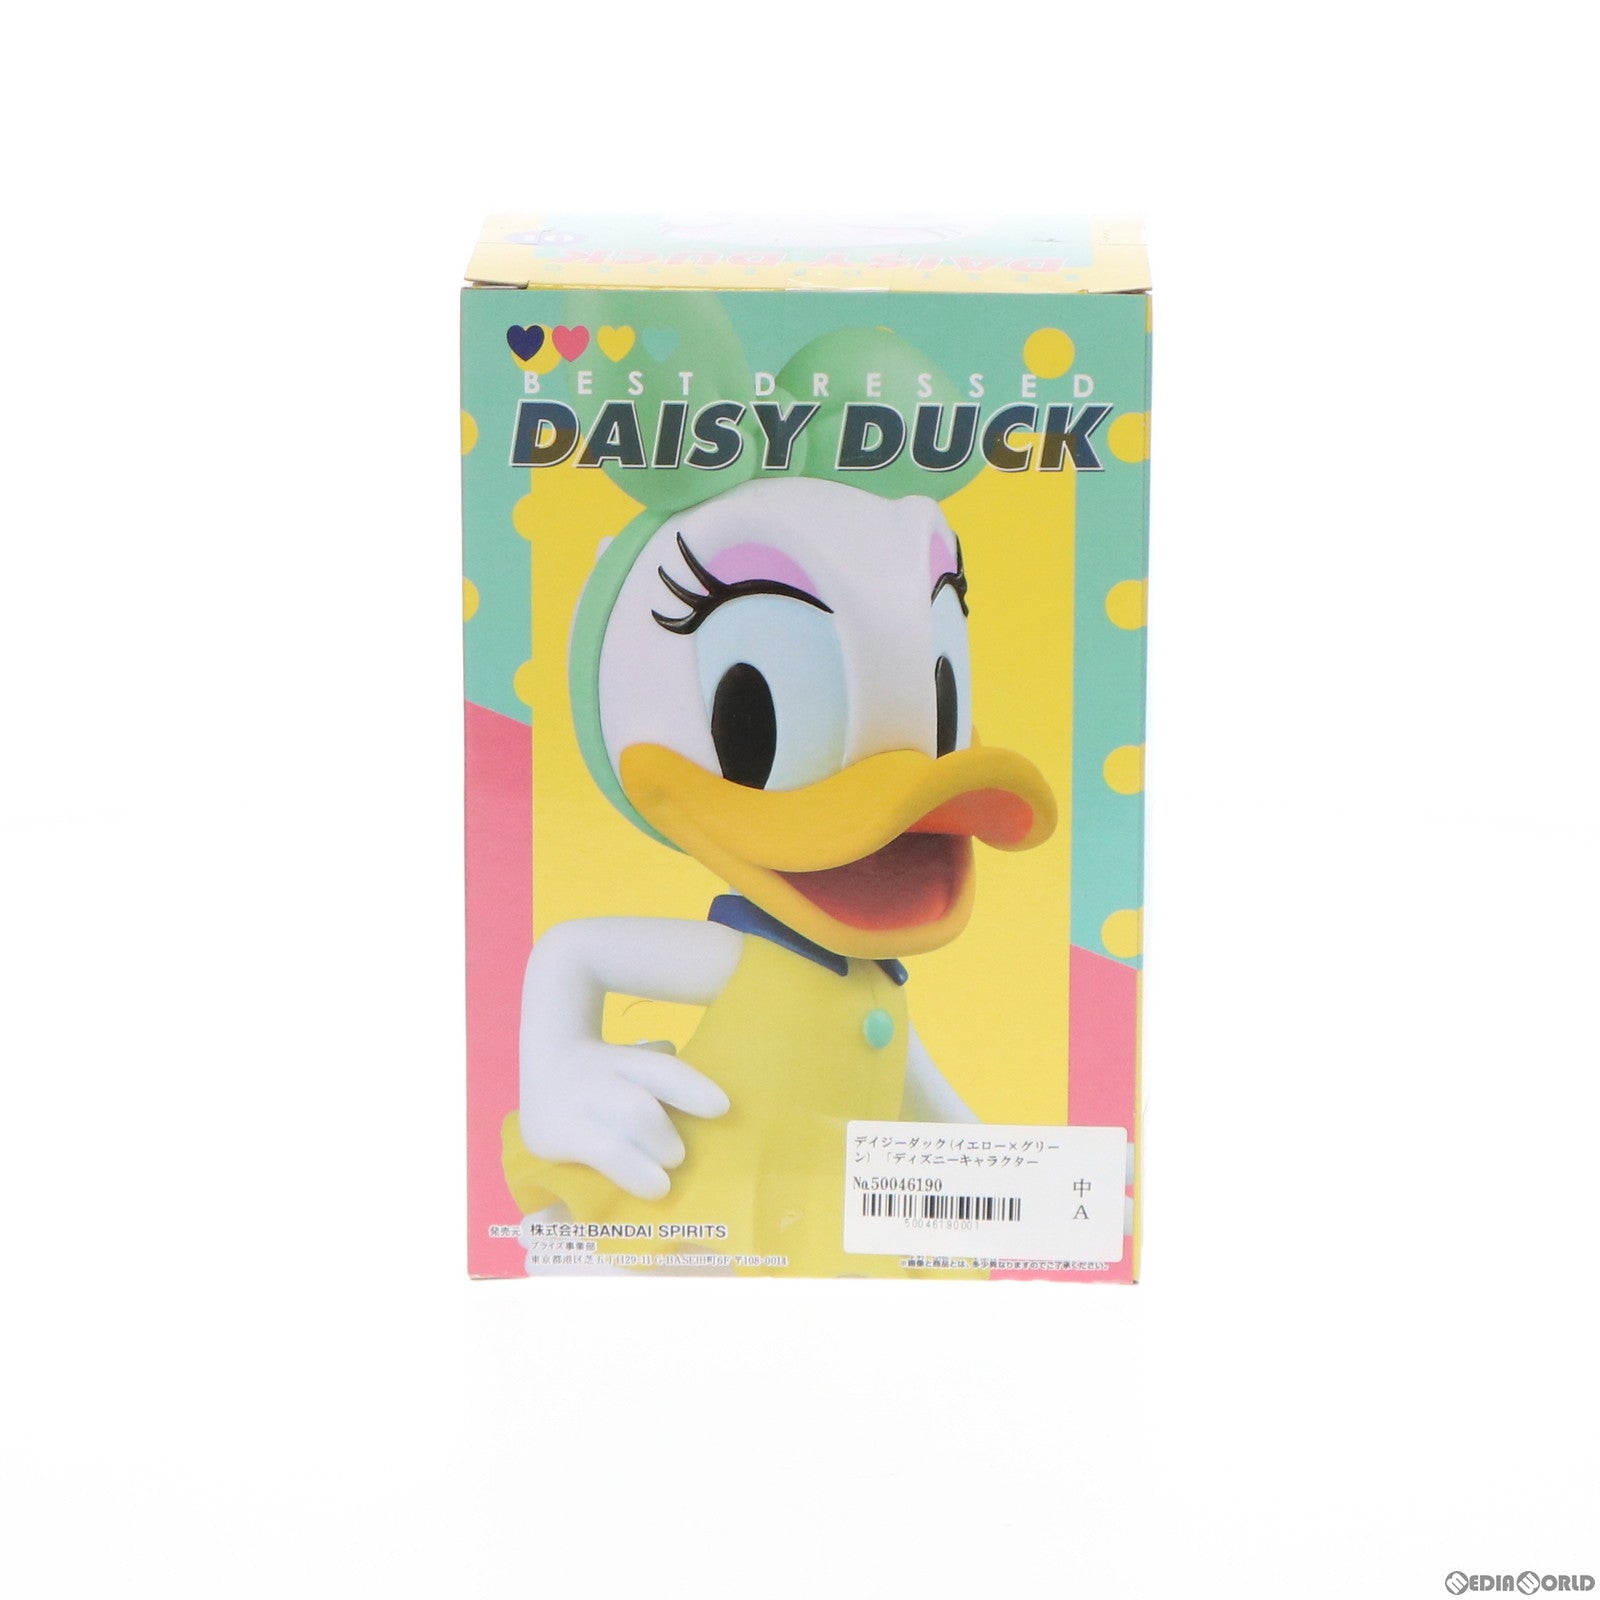 【中古即納】[FIG]デイジーダック(イエロー×グリーン) ディズニーキャラクター BEST Dressed -Daisy Duck- フィギュア プライズ(39659) バンプレスト(20190920)